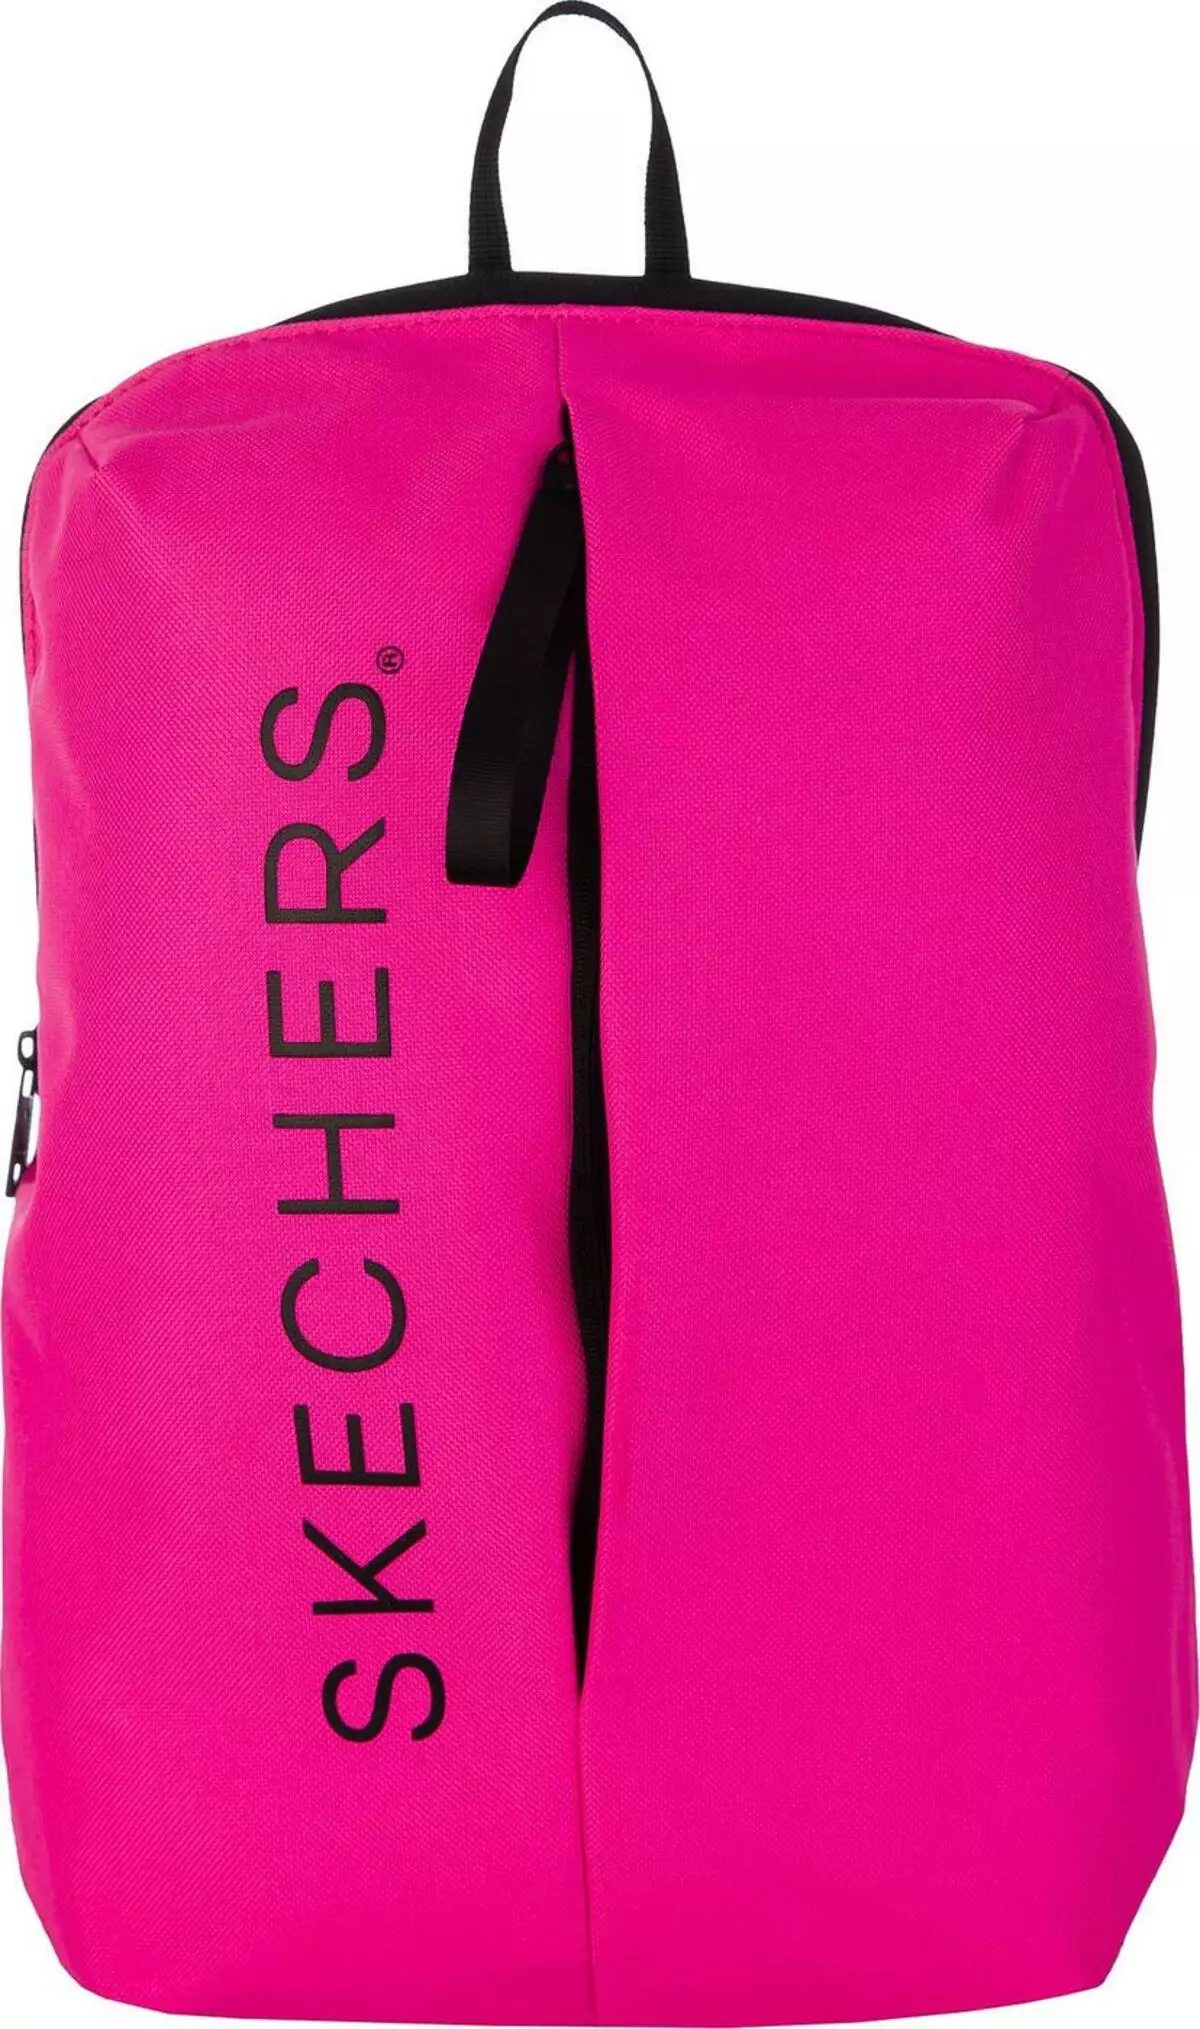 Skechers ကျောပိုးအိတ် - အမျိုးသမီးများသည်အနက်ရောင်နှင့်အစိမ်းရောင်, မီးခိုးရောင်နှင့်အနီရောင်, အနီရောင်, အပြာရောင်နှင့်အခြားမော်ဒယ်များ, ပြန်လည်သုံးသပ်ခြင်း 15455_23